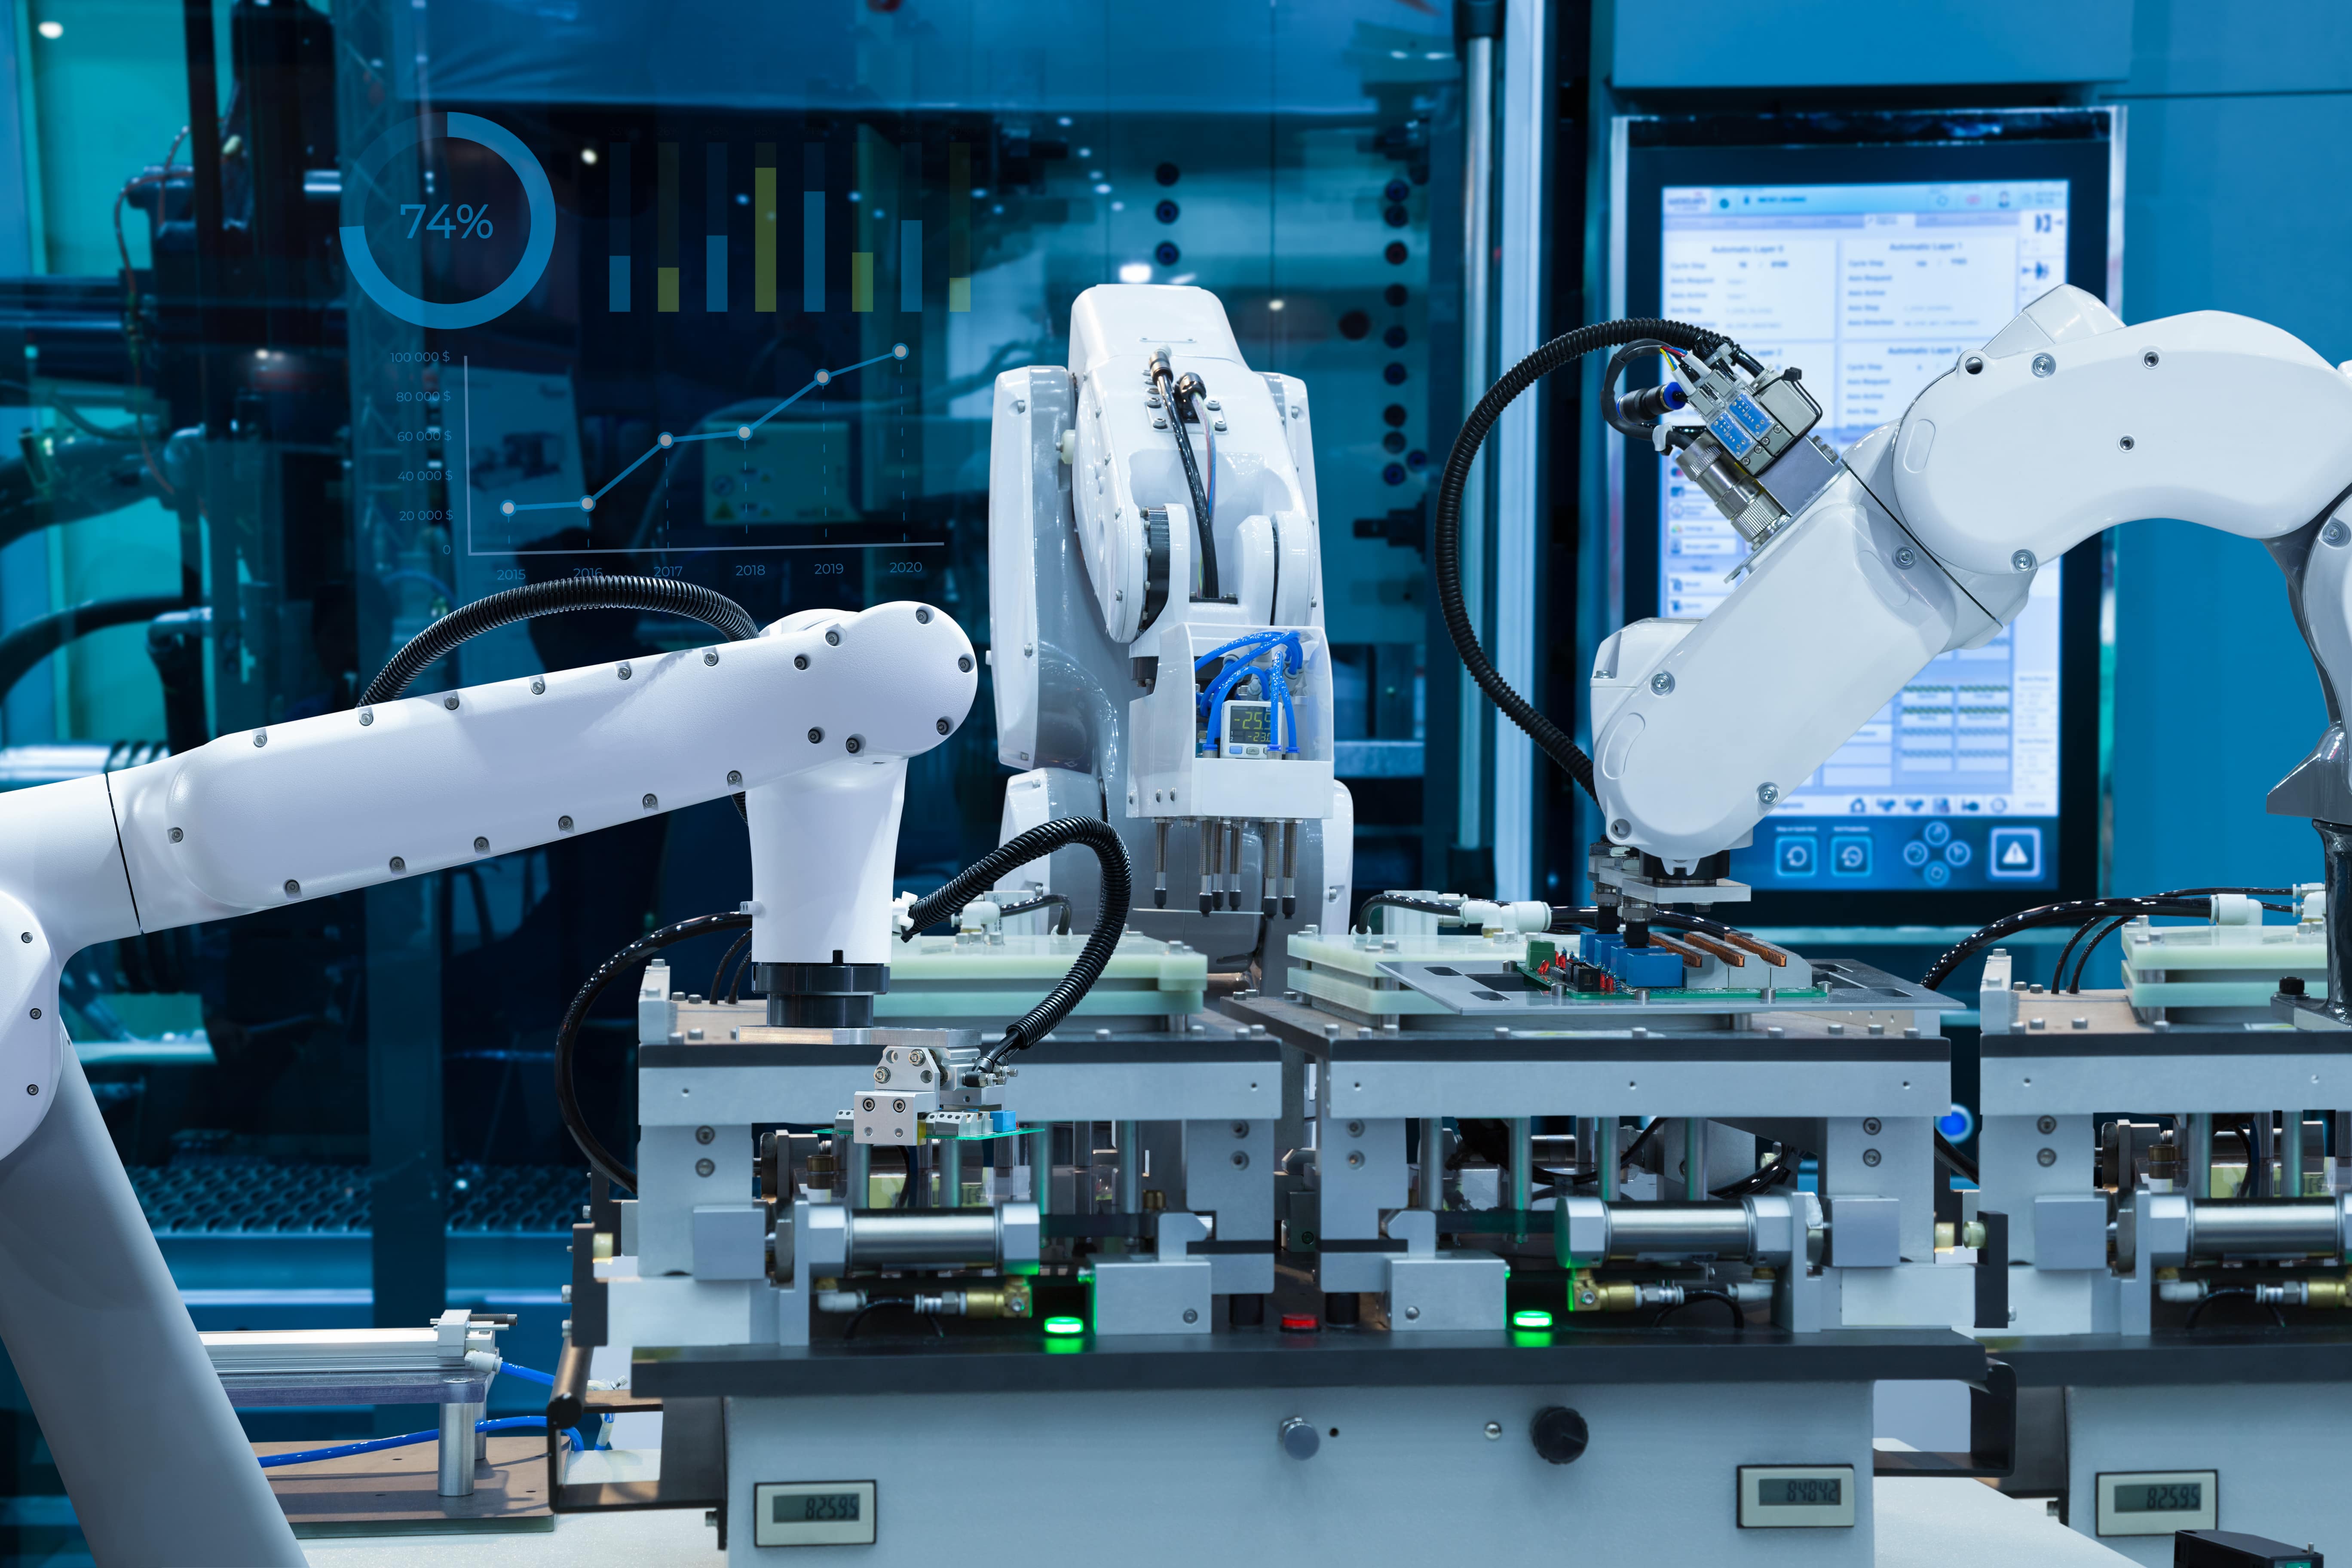 Перспективы автоматизации и роботизации возможности и ограничения. Bosch industry 4.0 Robots. Робот cong. Конвейер для сборки электроники. Автоматизация производства нулевая.